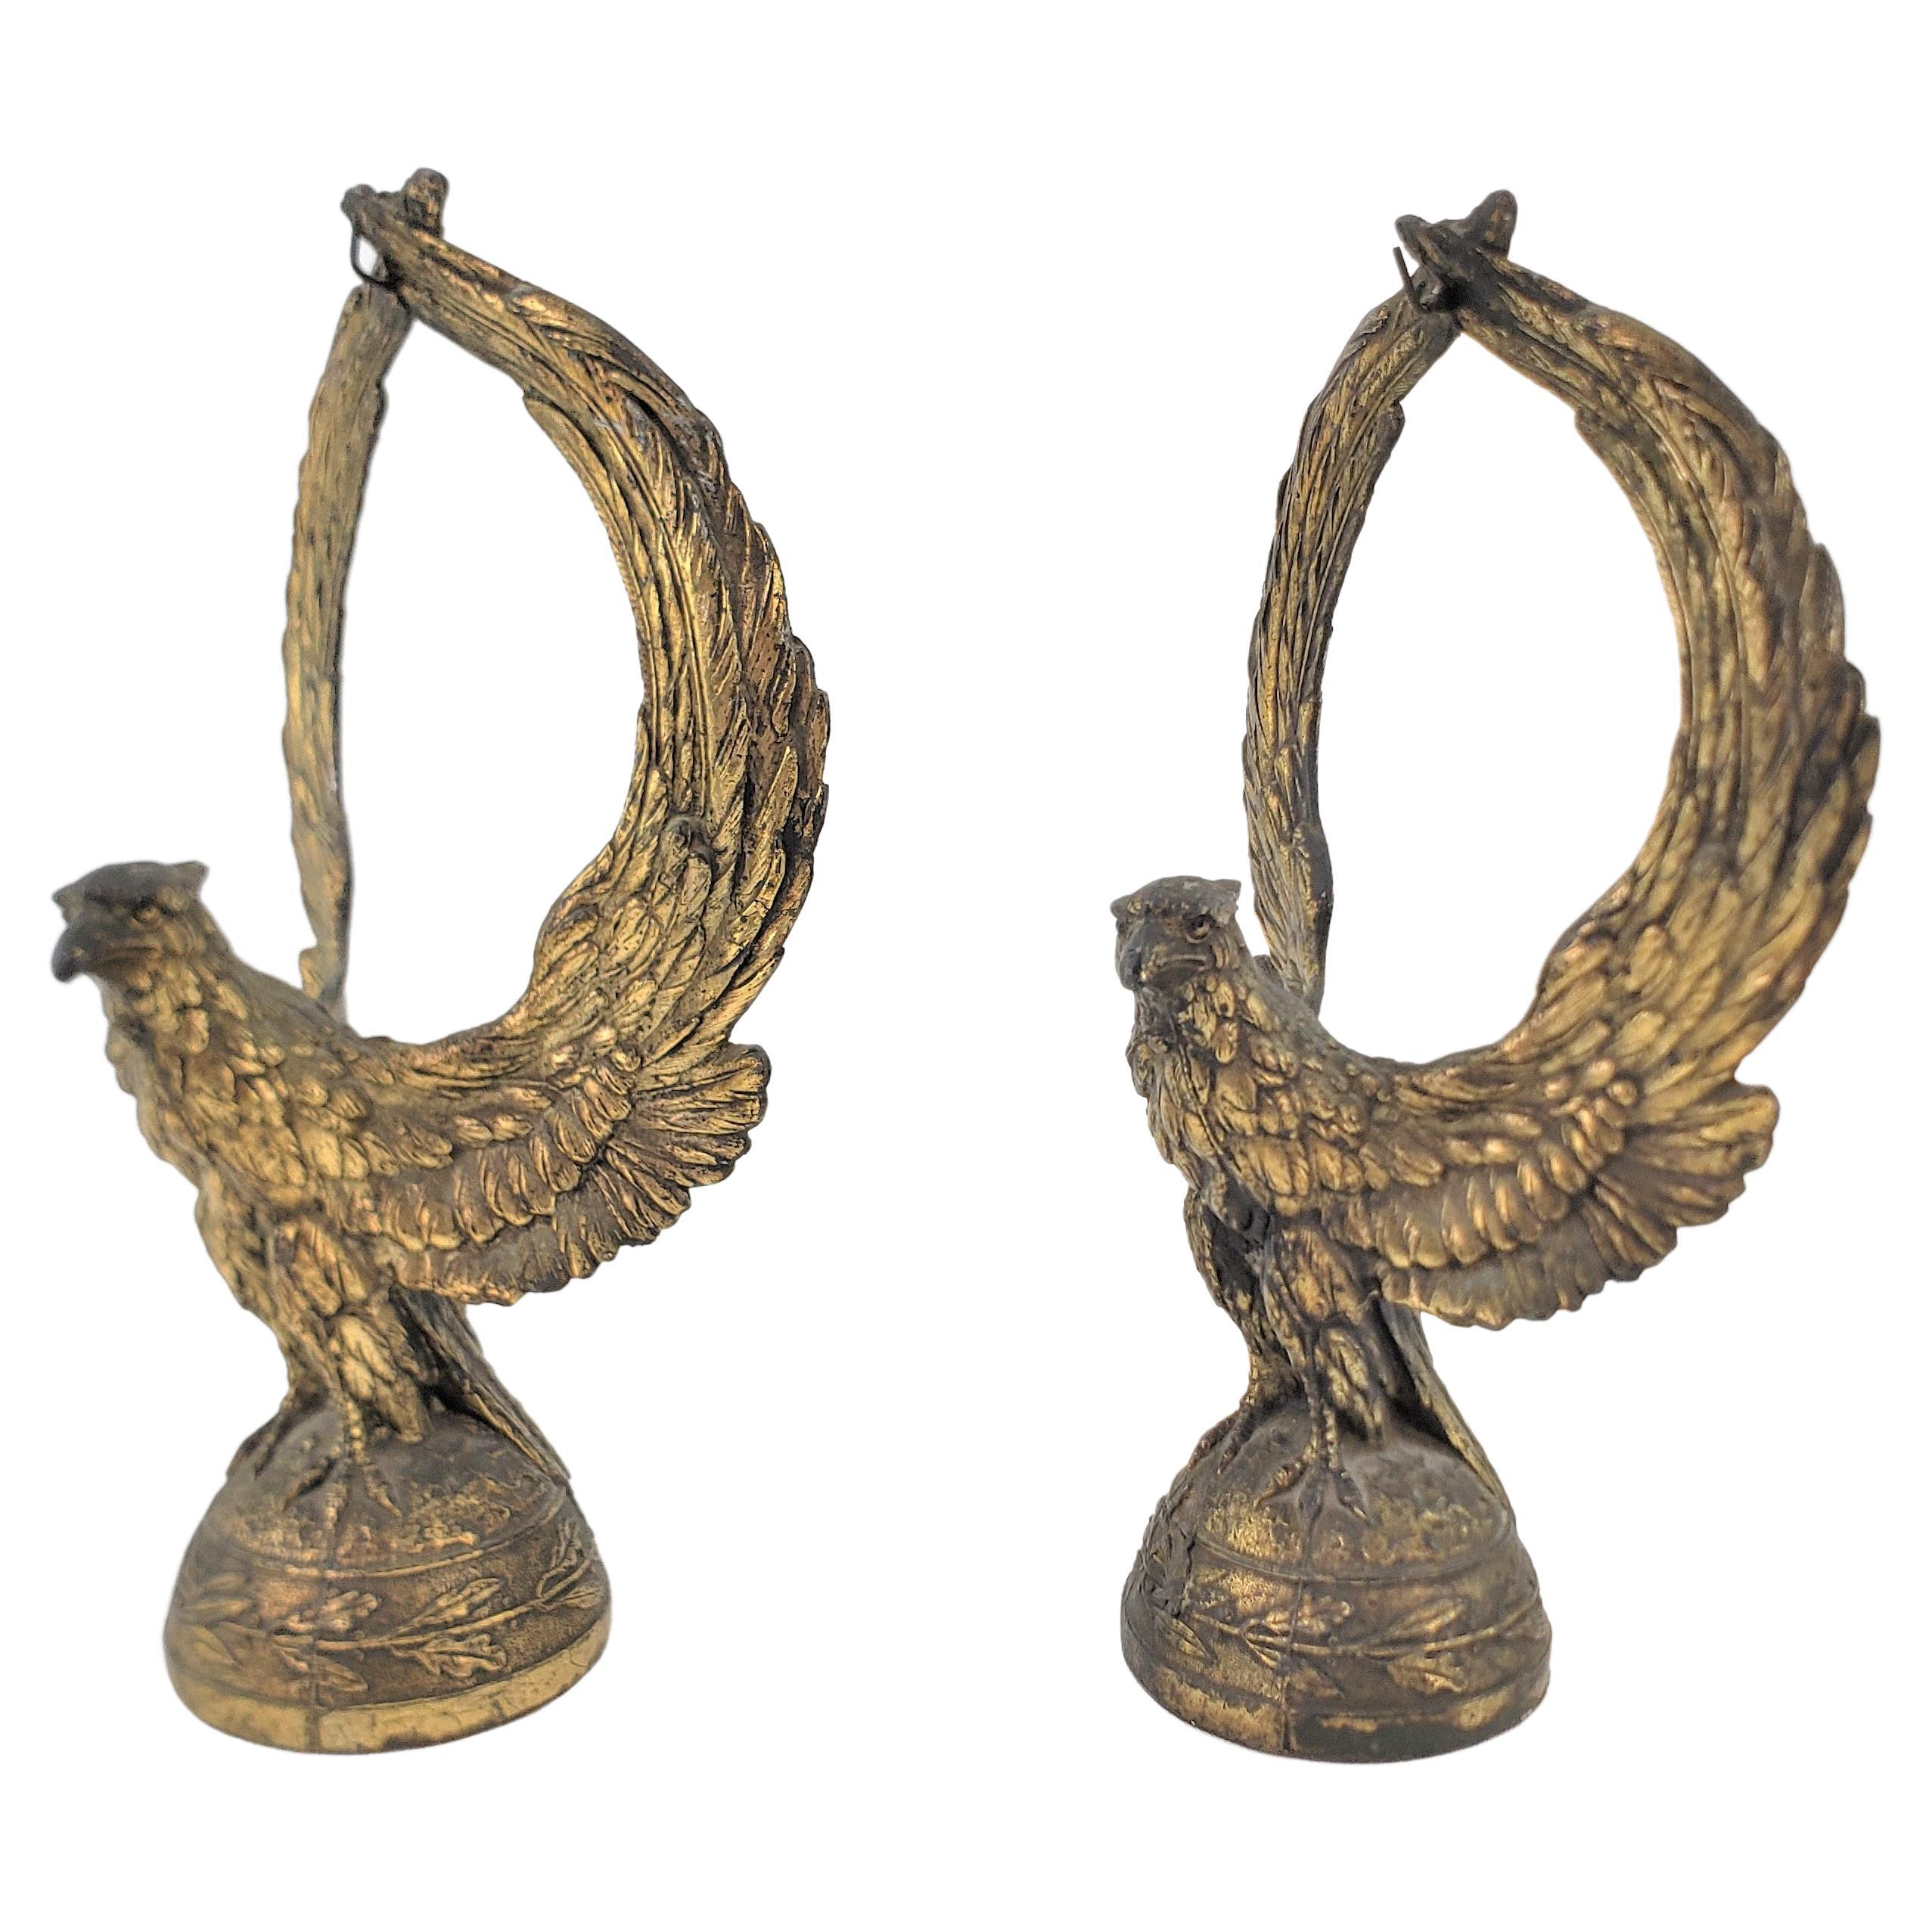 Paar antike versilberte figurale Taschenuhrenständer oder Buchstützen mit Baldachin aus Messing